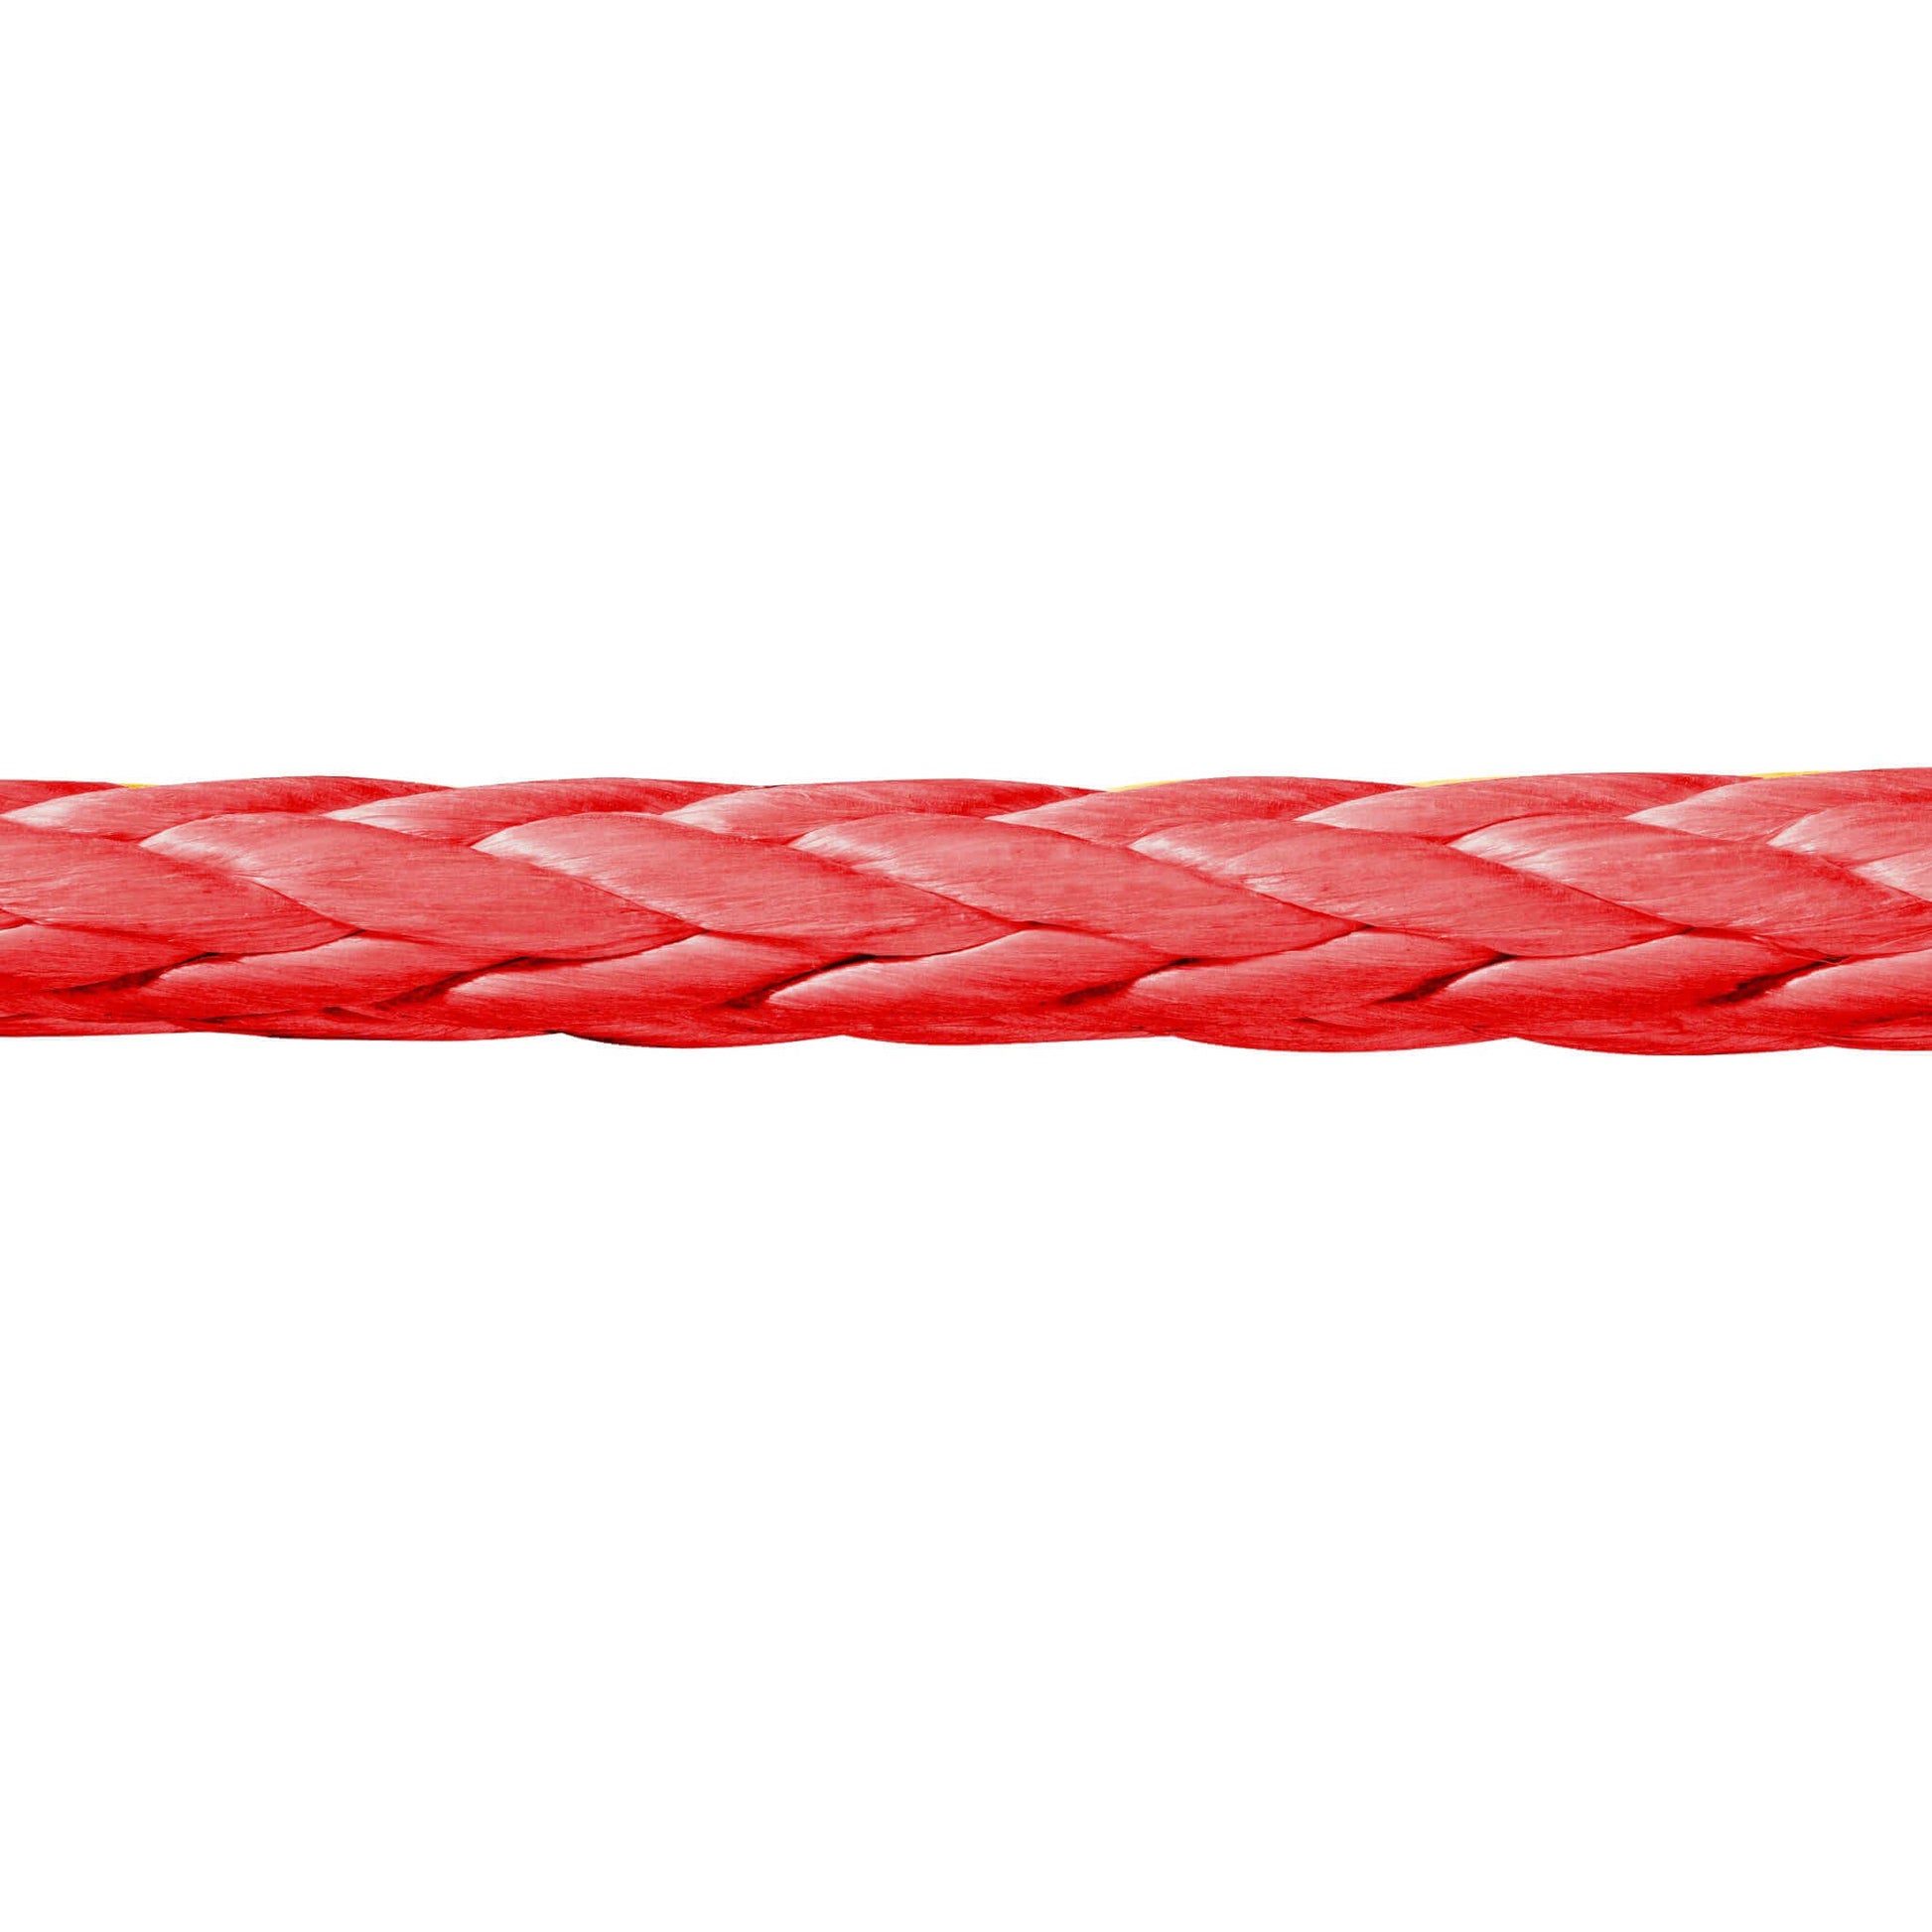 Das vielseitige 12-litzige Novoleen®-Seil von Seilflechter – ideal für Montage, Zug und Abspannung. Hochwertiges Windenseil für unterschiedliche Anwendungen, besonders im Forstbereich. Hohe Qualität, Leistung und Zuverlässigkeit für Ihre Projekte.